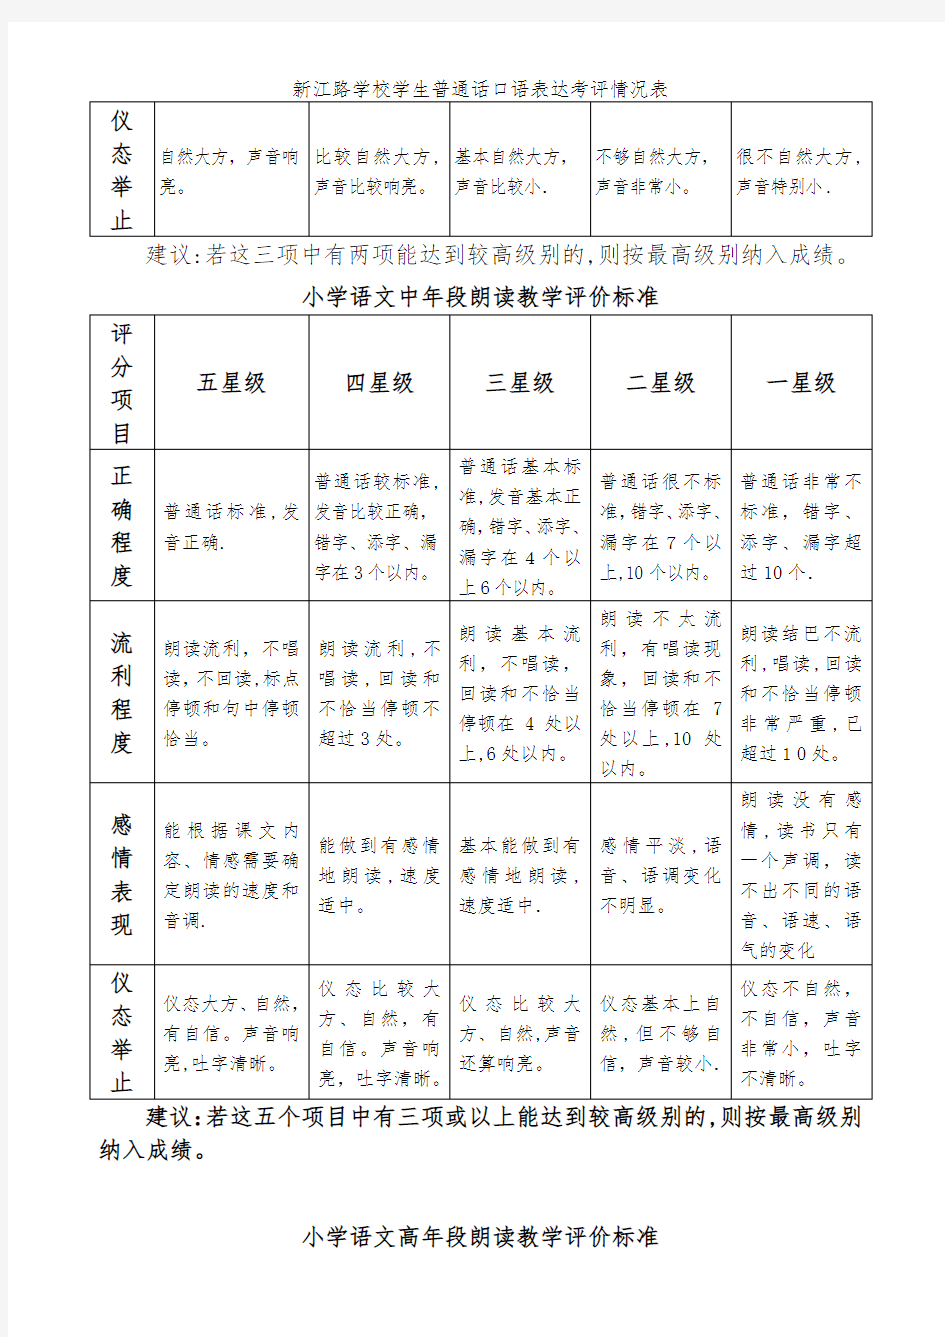 新江路学校学生普通话口语表达考评情况表